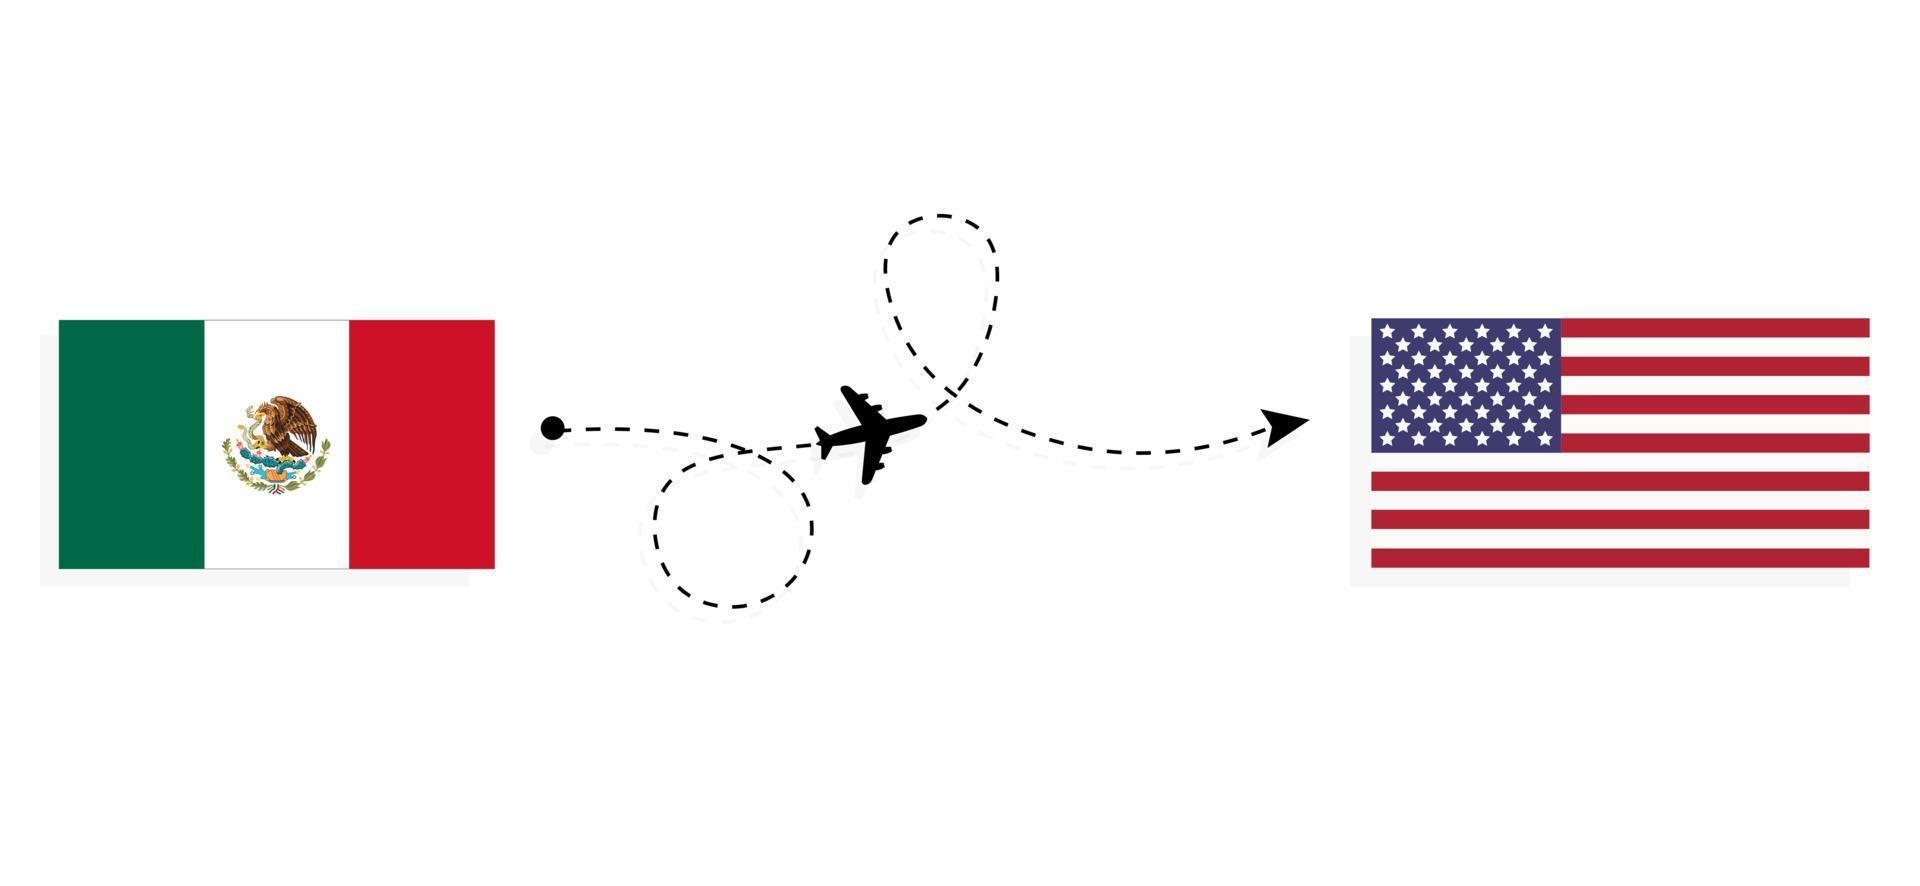 vlucht en reis van Australië naar de VS met het reisconcept van het passagiersvliegtuig vector